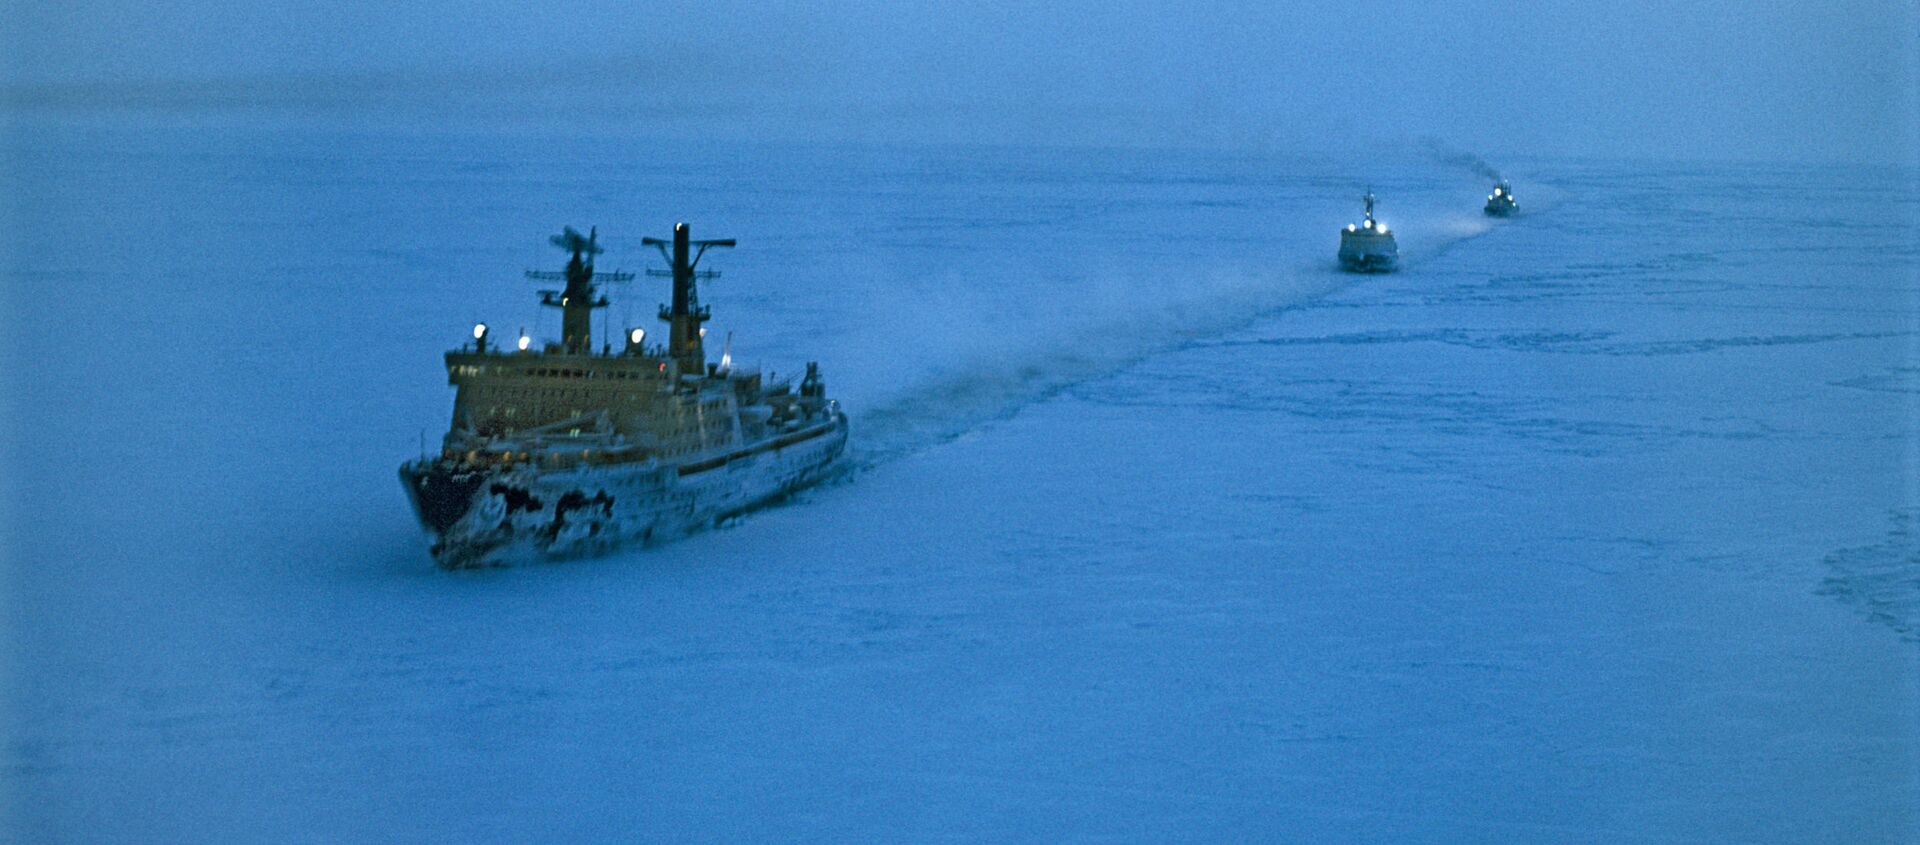 Атомски ледоломац Арктика води караван бродова кроз лед на Карском мору у Северном леденом океану - Sputnik Србија, 1920, 03.01.2021